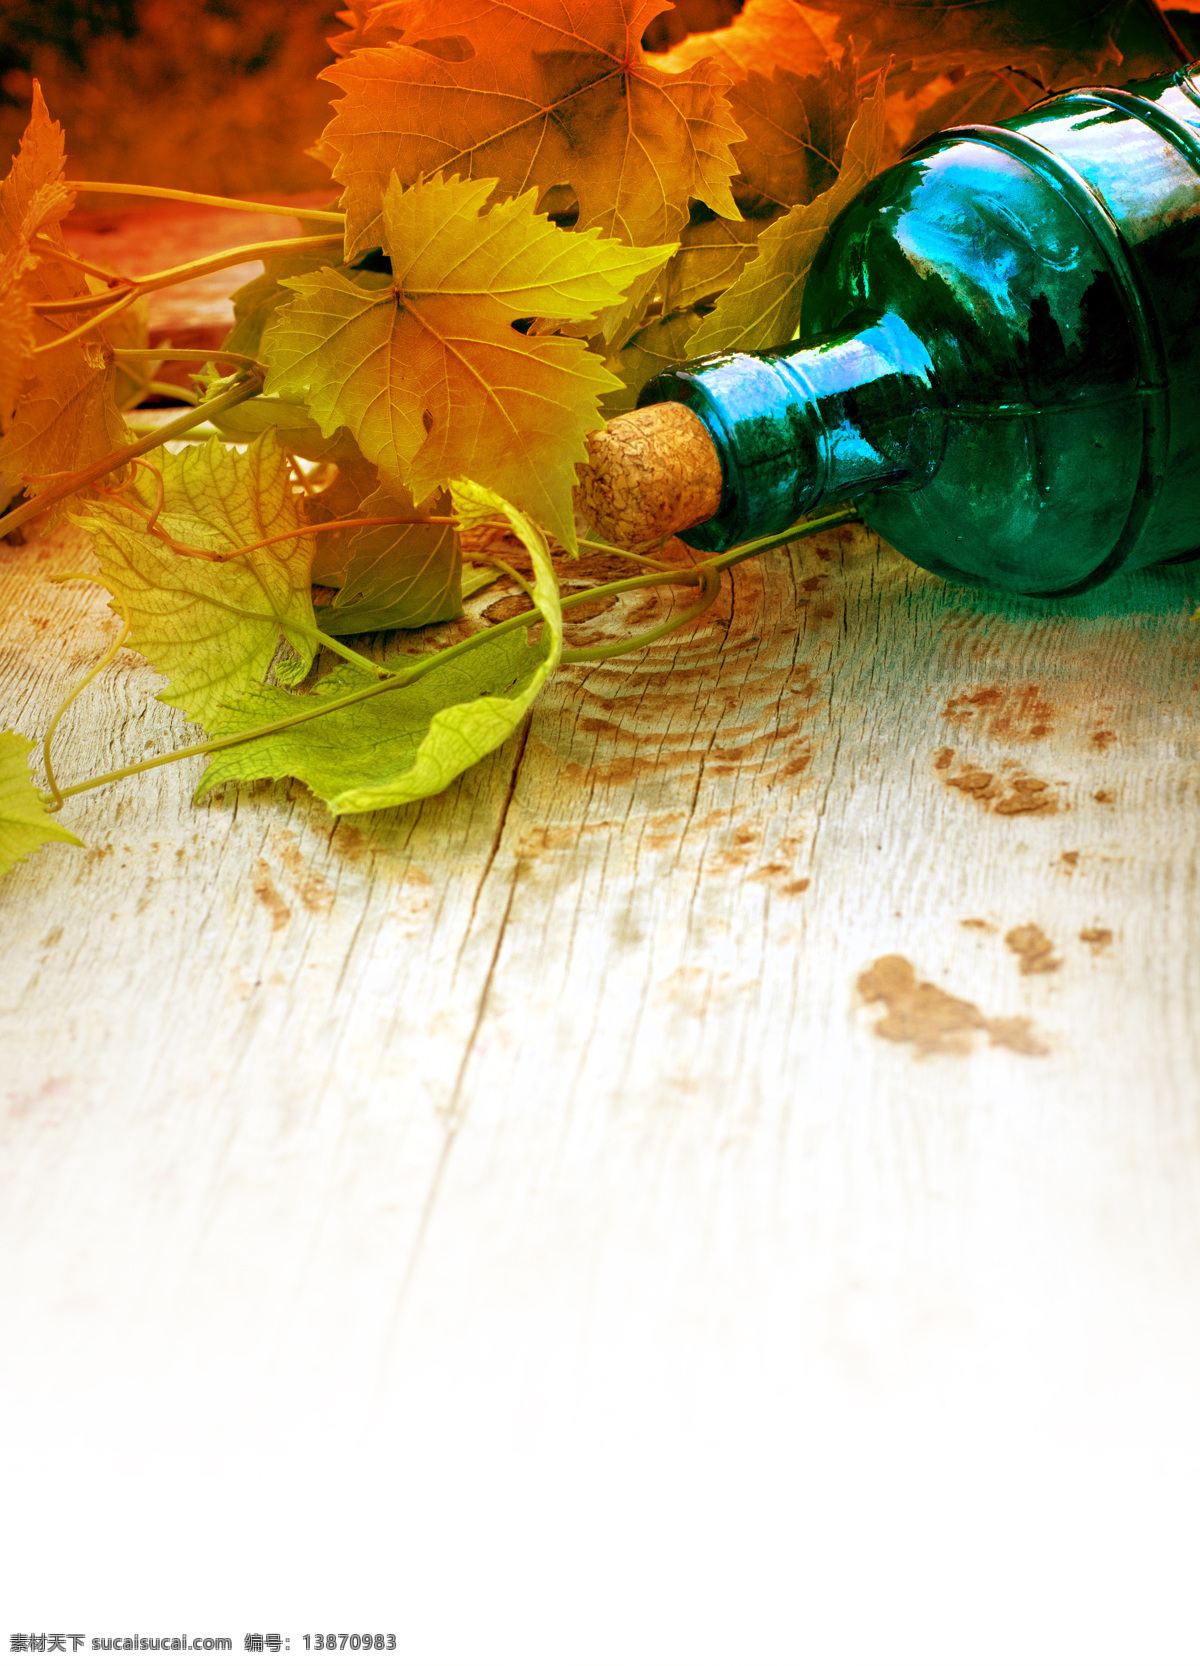 玻璃 酒瓶 葡萄 叶 葡萄酒 木板背景 木纹背景 葡萄叶 葡萄藤 玻璃瓶子 酒类图片 餐饮美食